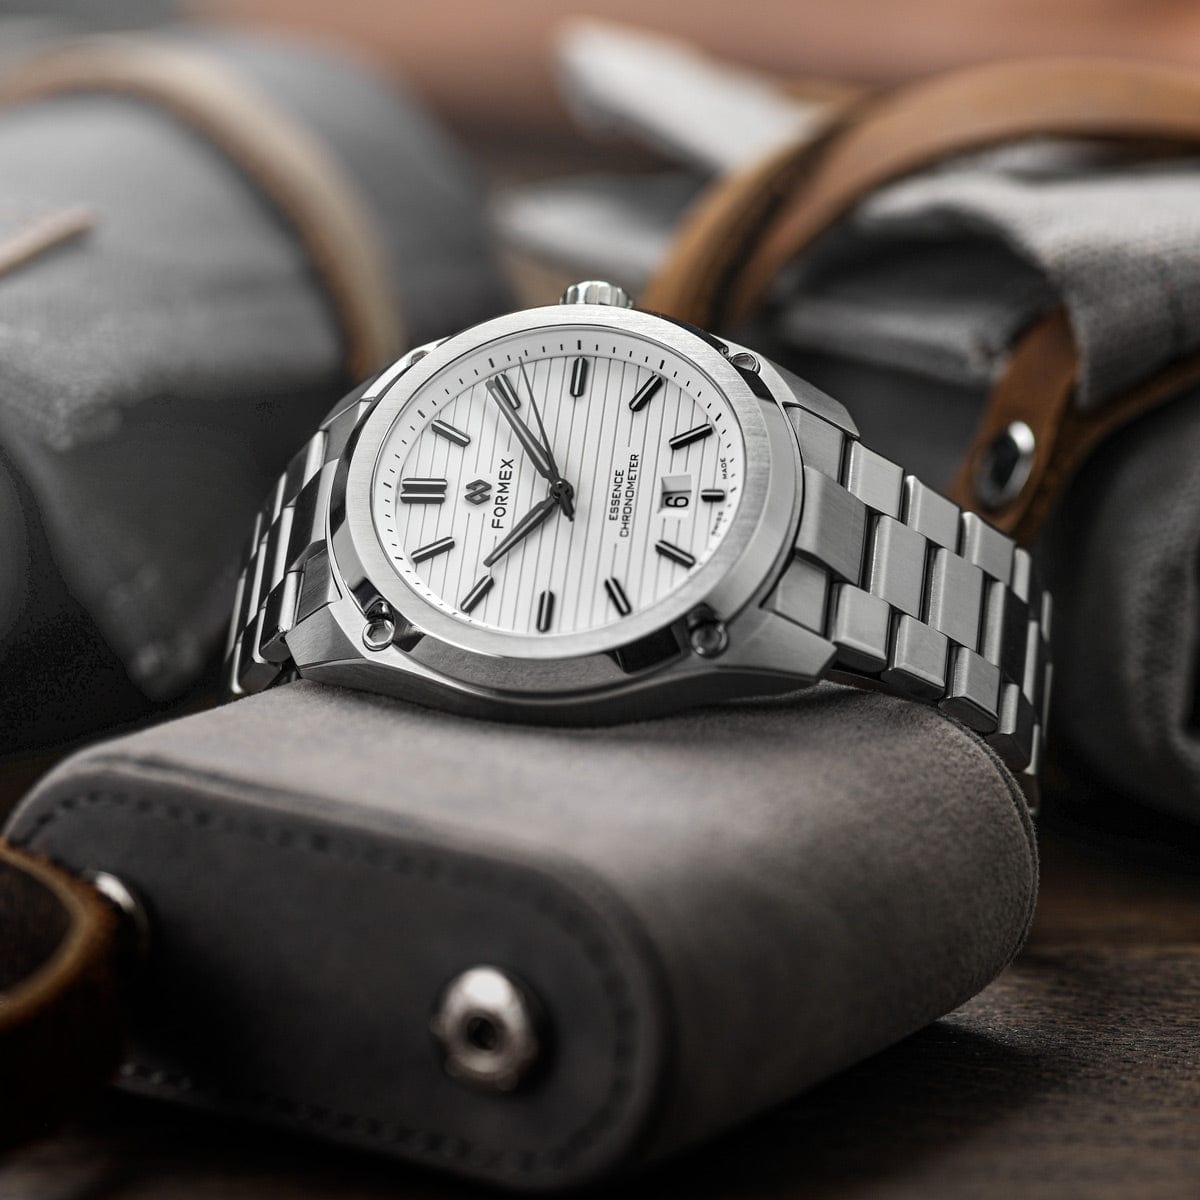 Formex Essence 39 Automatic Chronometer Watch - Dégradé Grey / Steel Bracelet - NEARLY NEW